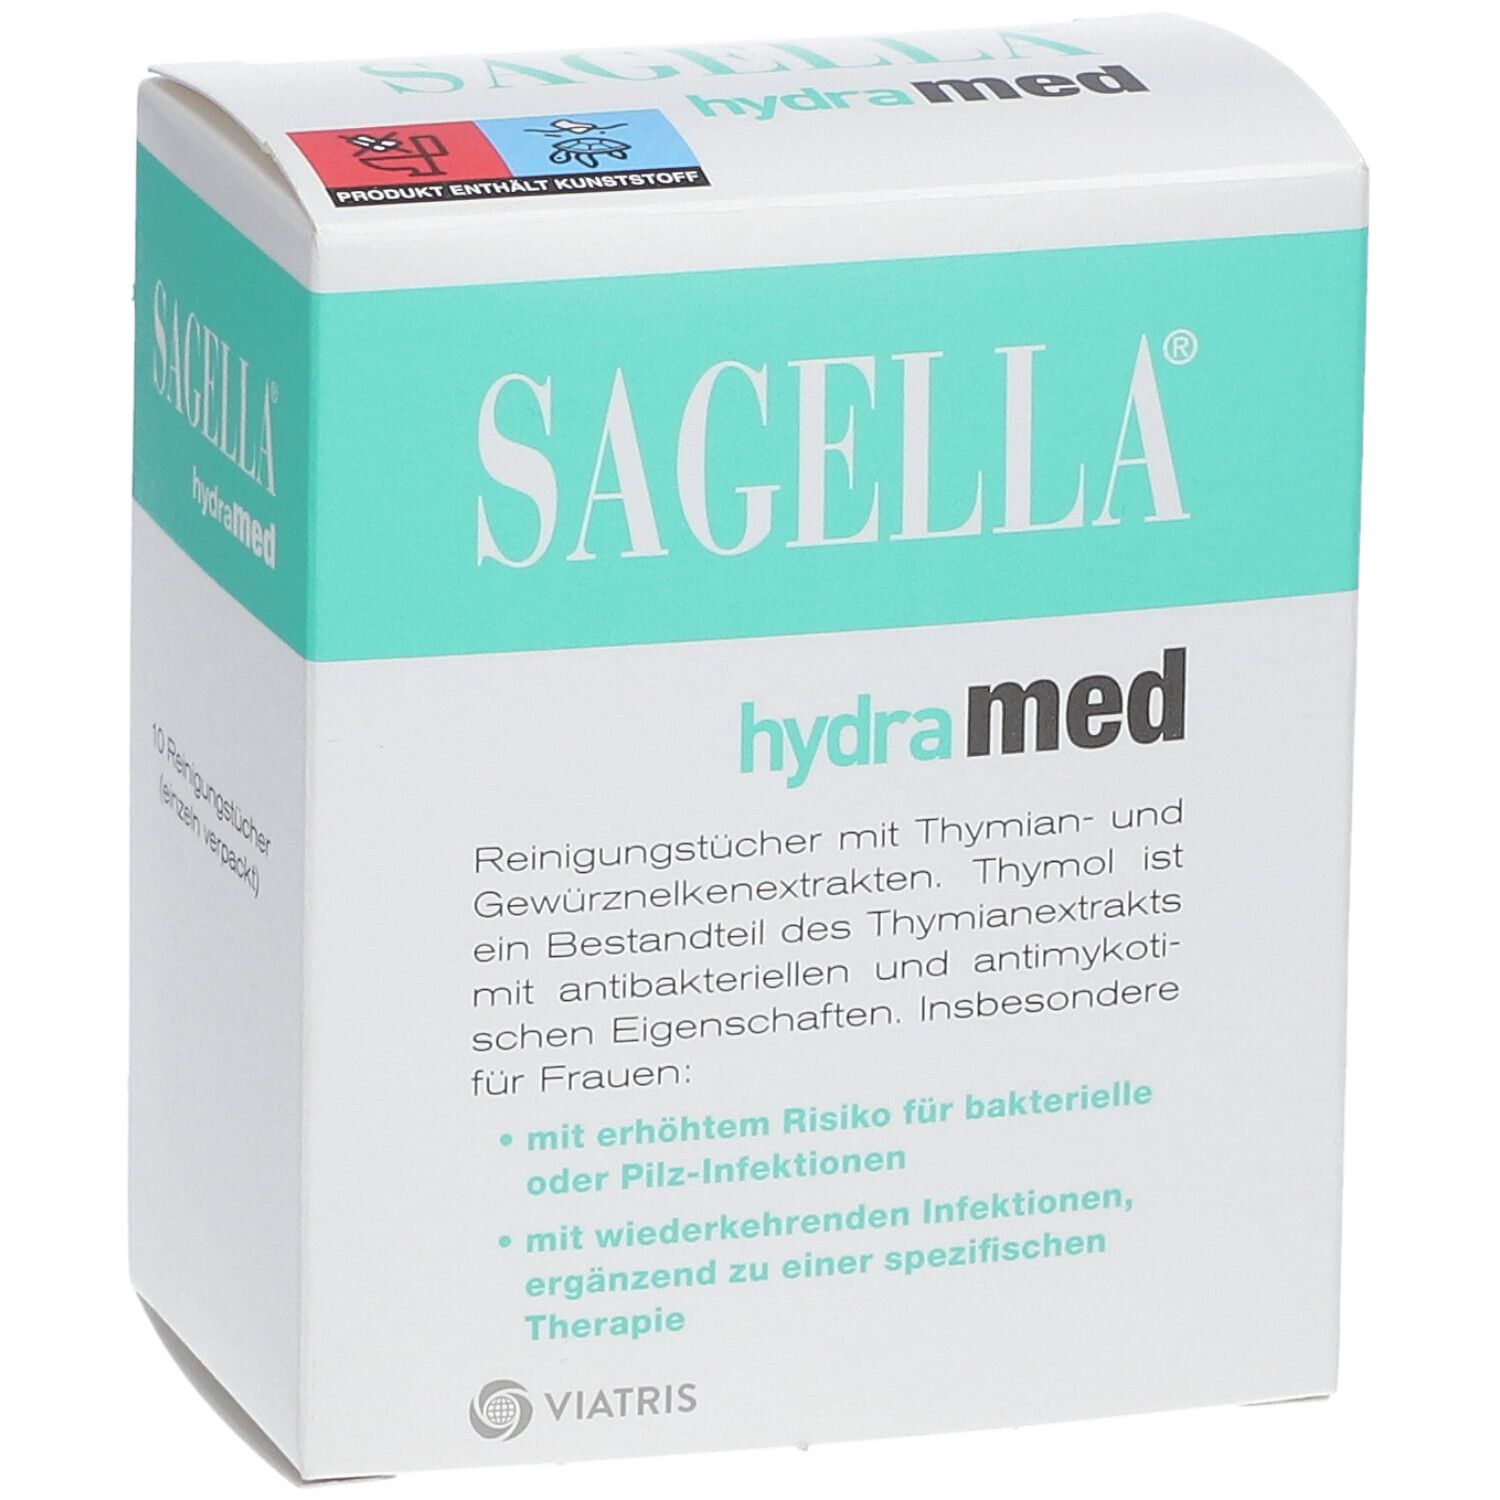 SAGELLA hydramed Intim-Reinigungstücher